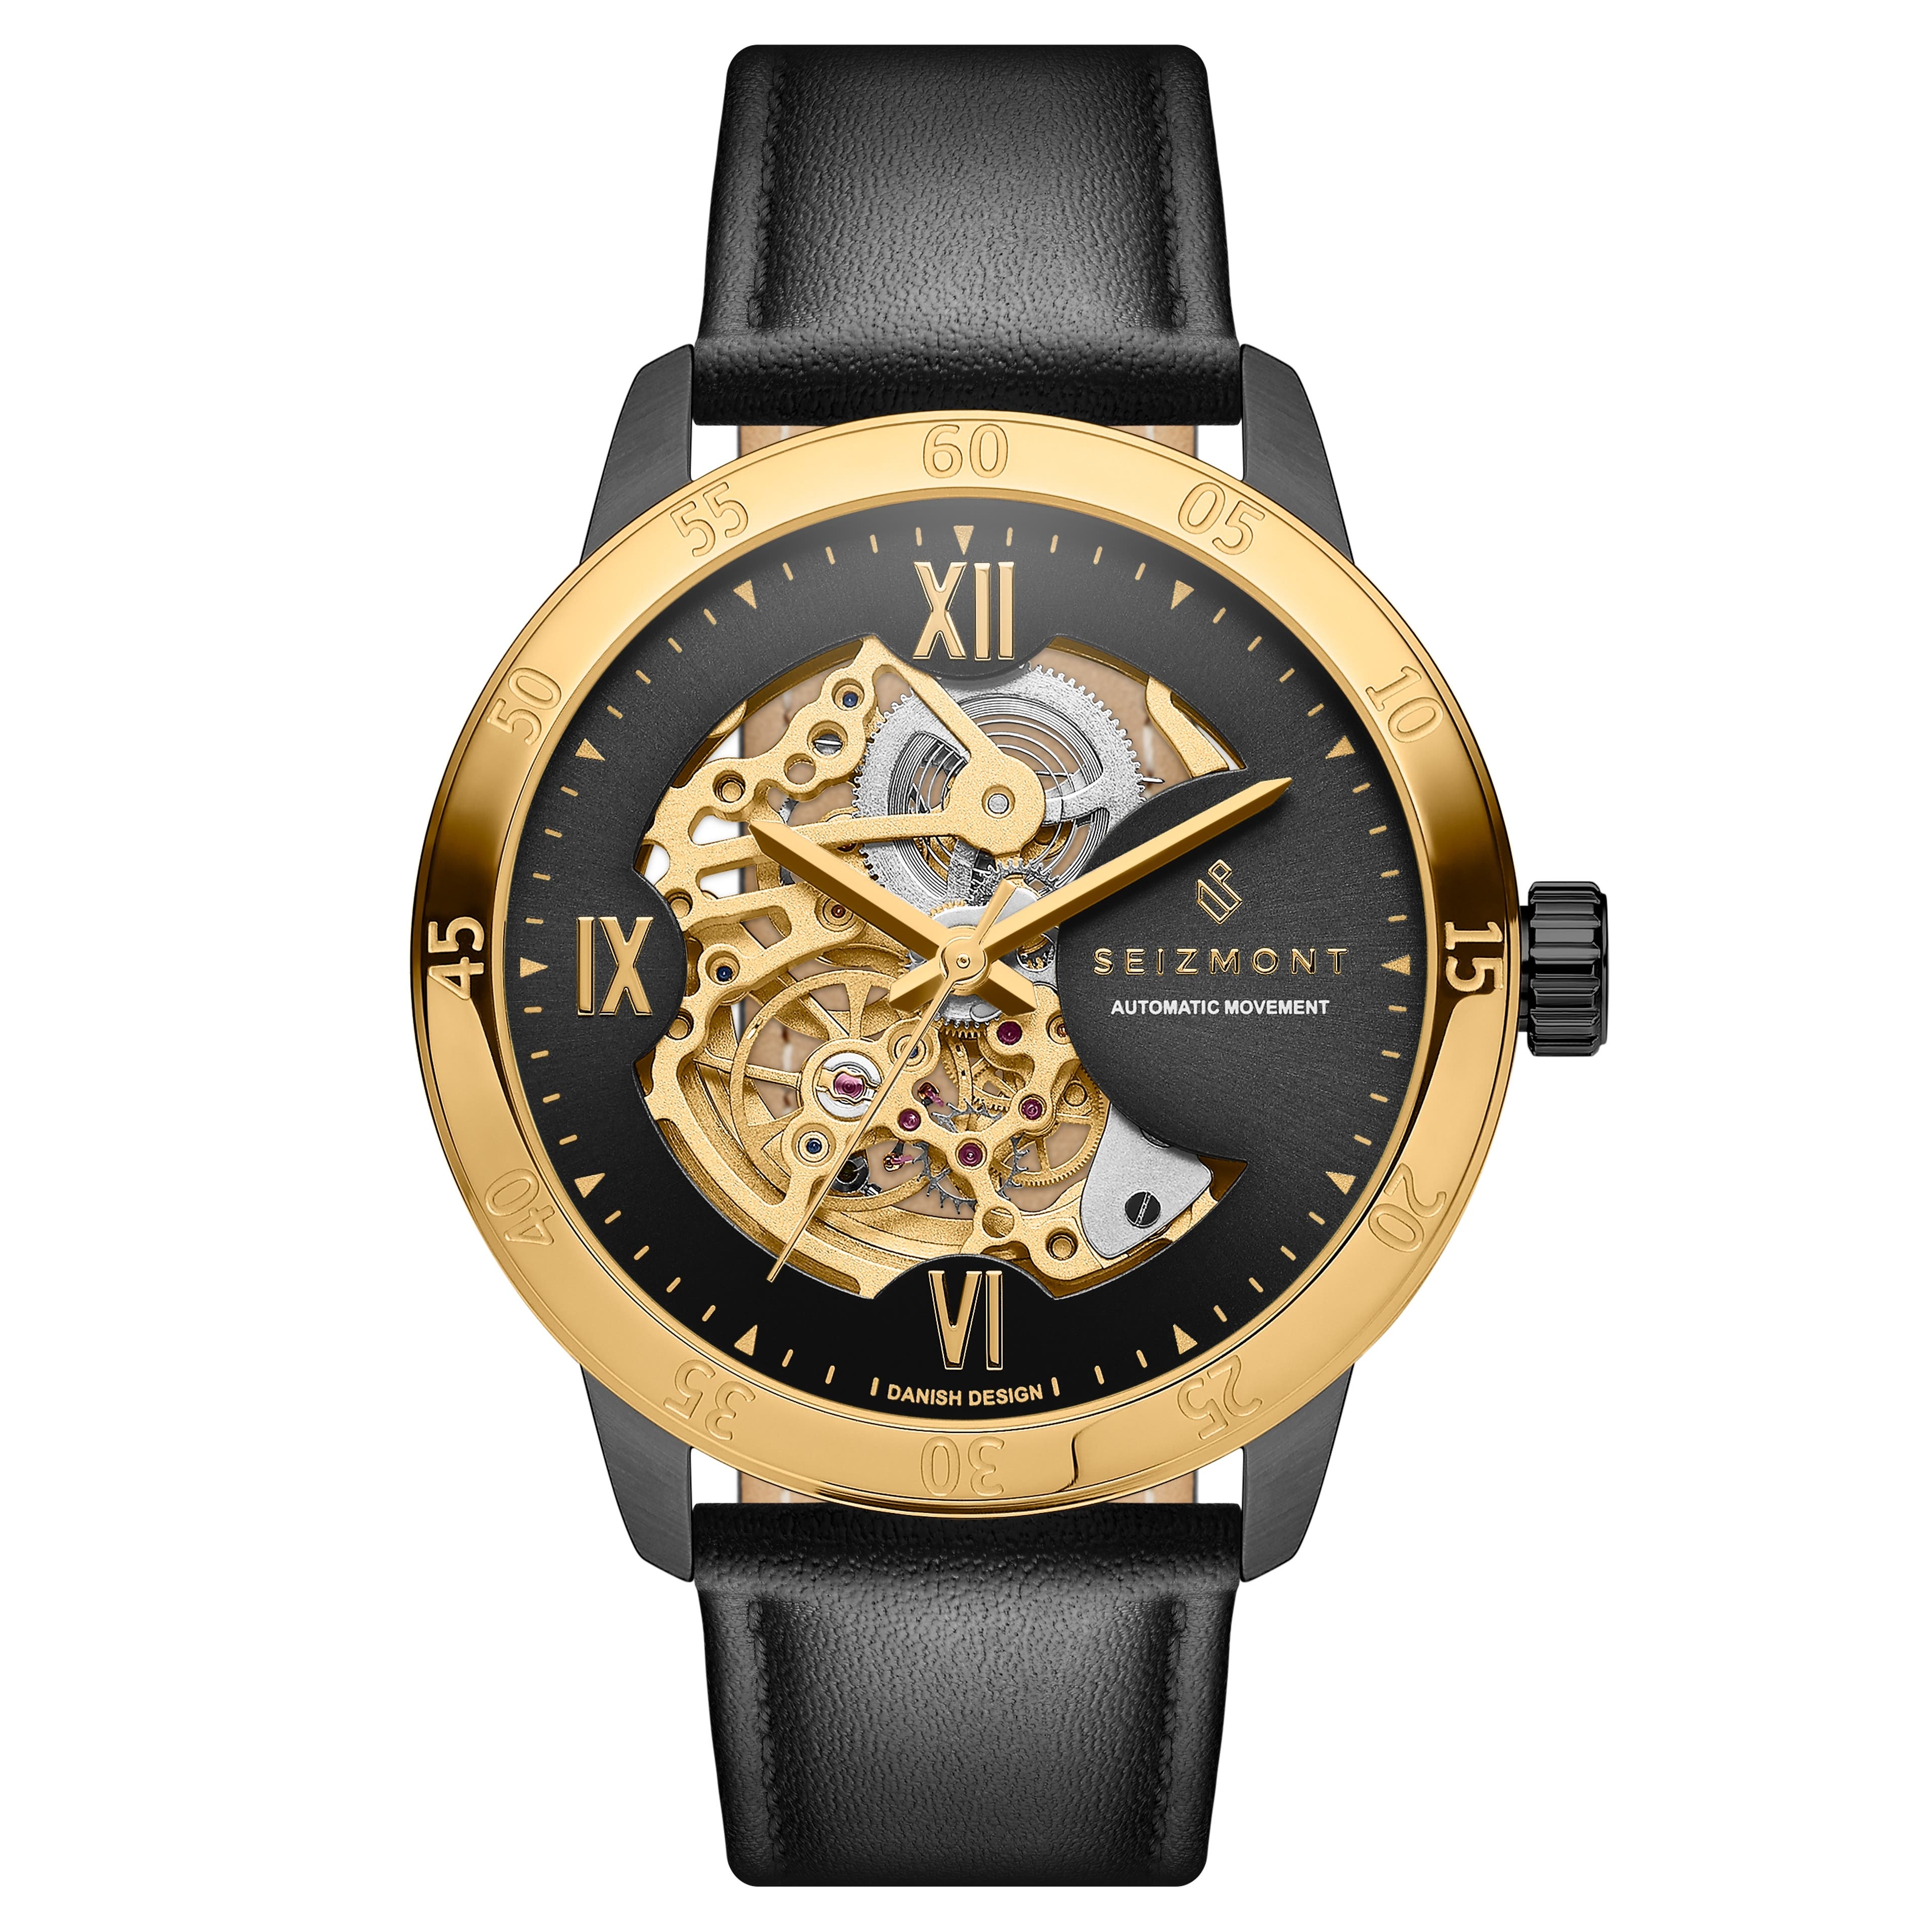 Dante II | Reloj esqueleto de acero inoxidable con correas de cuero dorado